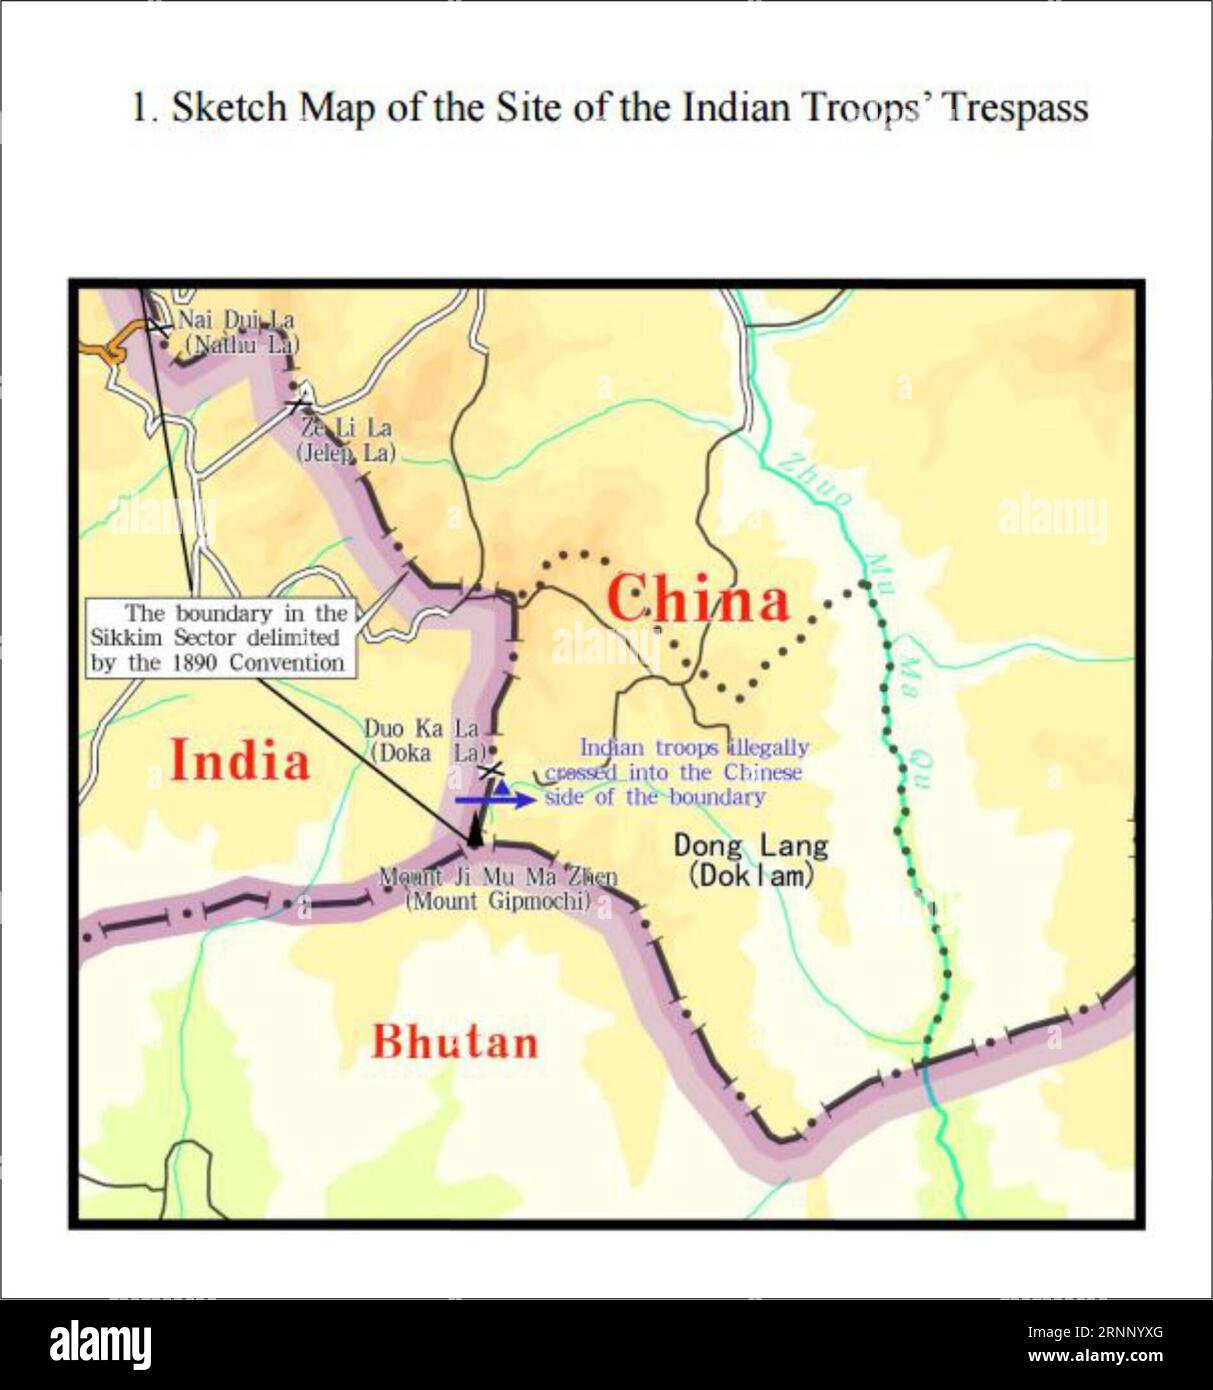 (170802) -- PECHINO, 2 agosto 2017 -- la grafica mostra un'appendice rilasciata nel documento intitolato i fatti e la posizione della Cina riguardo alle truppe di frontiera indiane che attraversano il confine Cina-India nel settore Sikkim nel territorio cinese. ) GRAFICA CHINA-BOUNDARY-INDIA TROOPS-ILLEGAL TRESPASS-FACTS (1) Quxzhendong PUBLICATIONxNOTxINxCHN Beijing Aug 2 2017 la grafica mostra all'appendice pubblicata nel documento intitolato The Facts and China S position riguardante le truppe di frontiera indiane che attraversano il confine con la Cina India nel settore Sikkim nel territorio cinese grafica C. Foto Stock